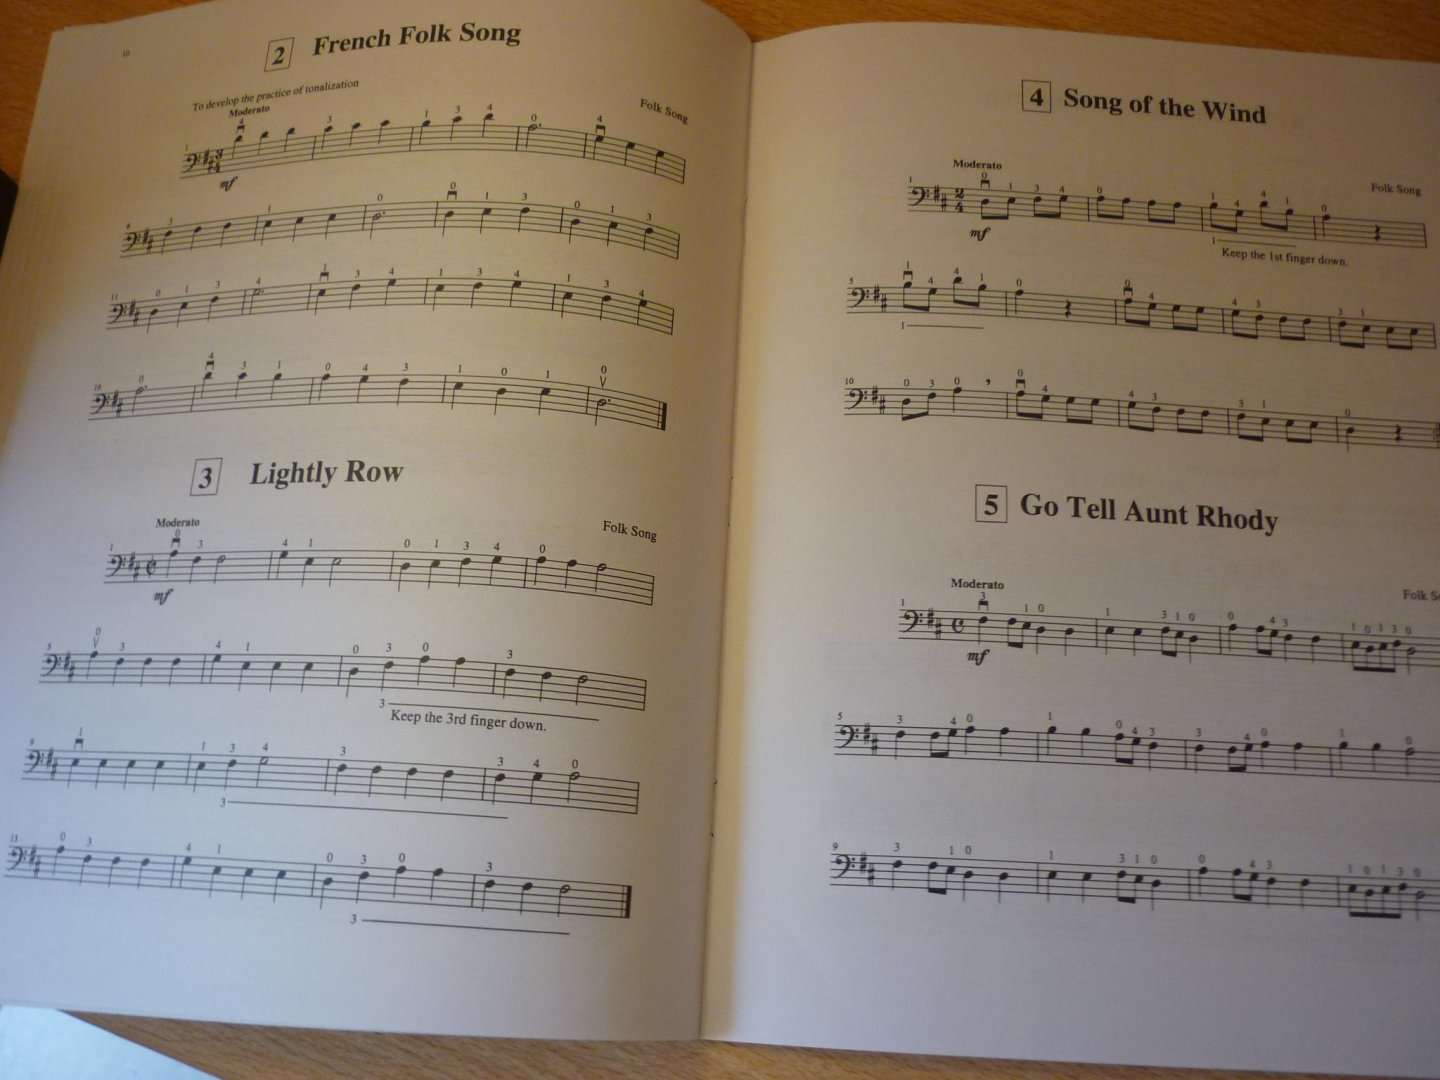 Suzuki; Shin'ichi  (1898 – 1998) - Suzuki Cello School - Volume 1 (revised edition)